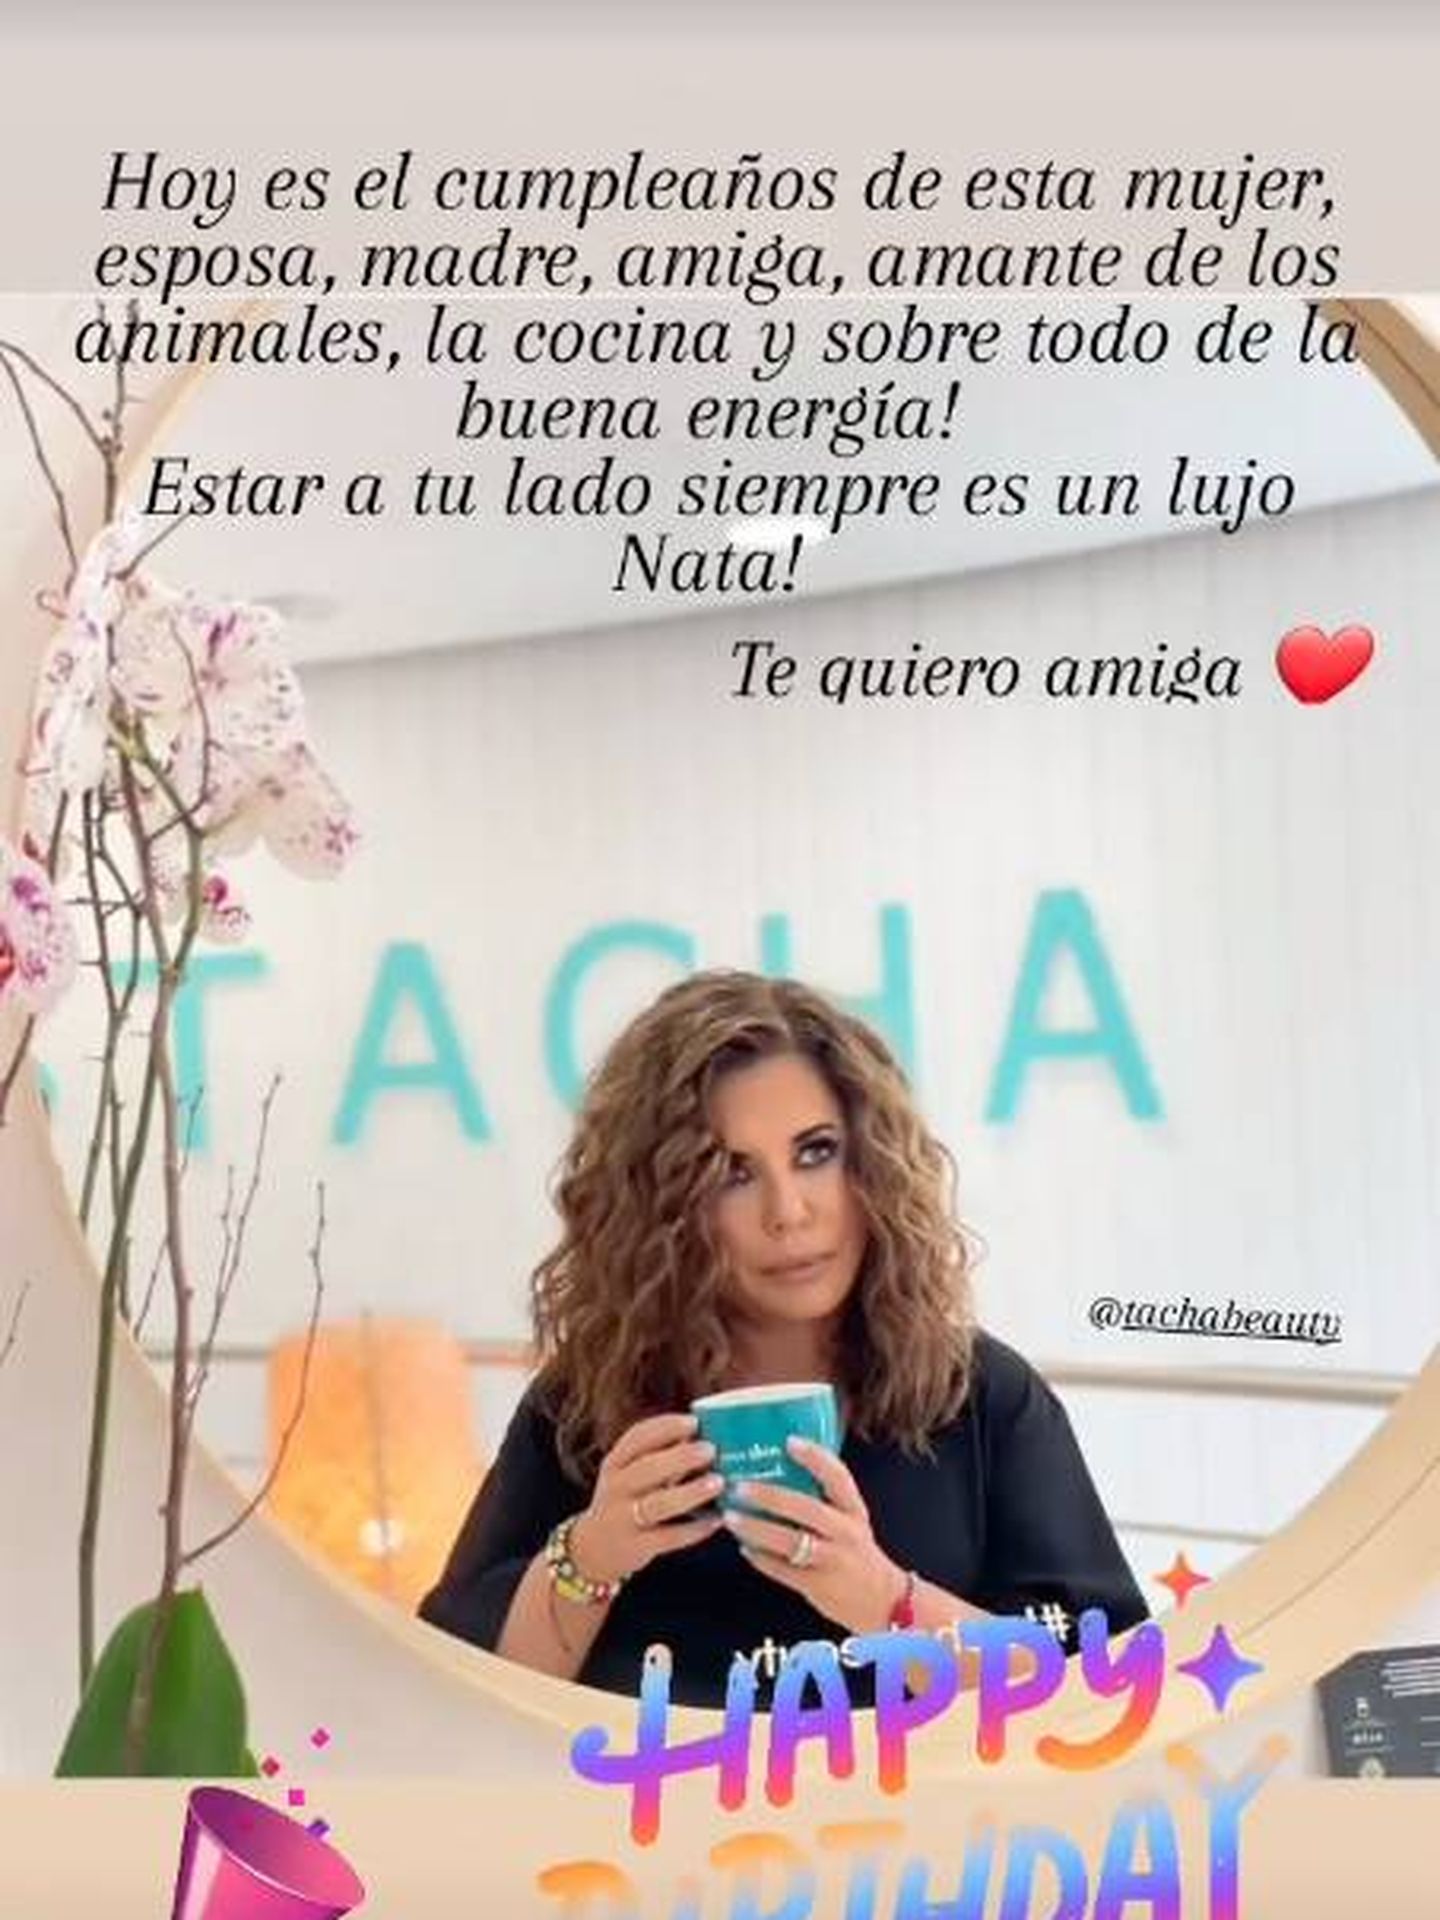 La felicitación de Paula a Natalia. (Instagram @pau_eche)